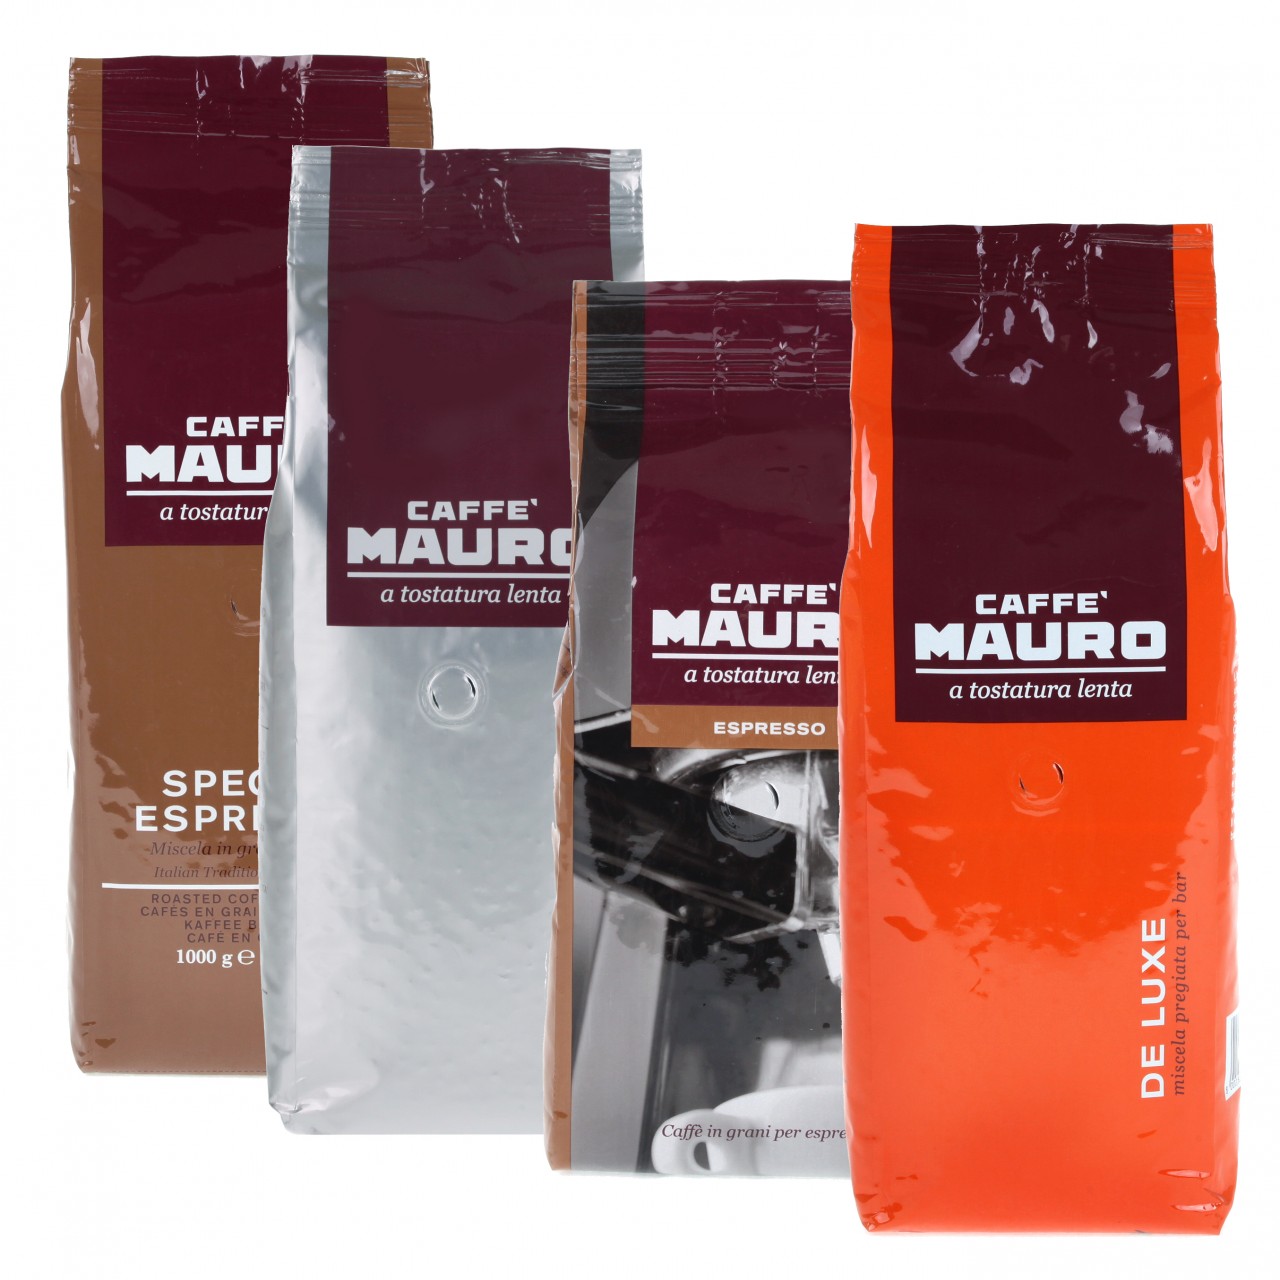 Mauro Tasting Package No. 2